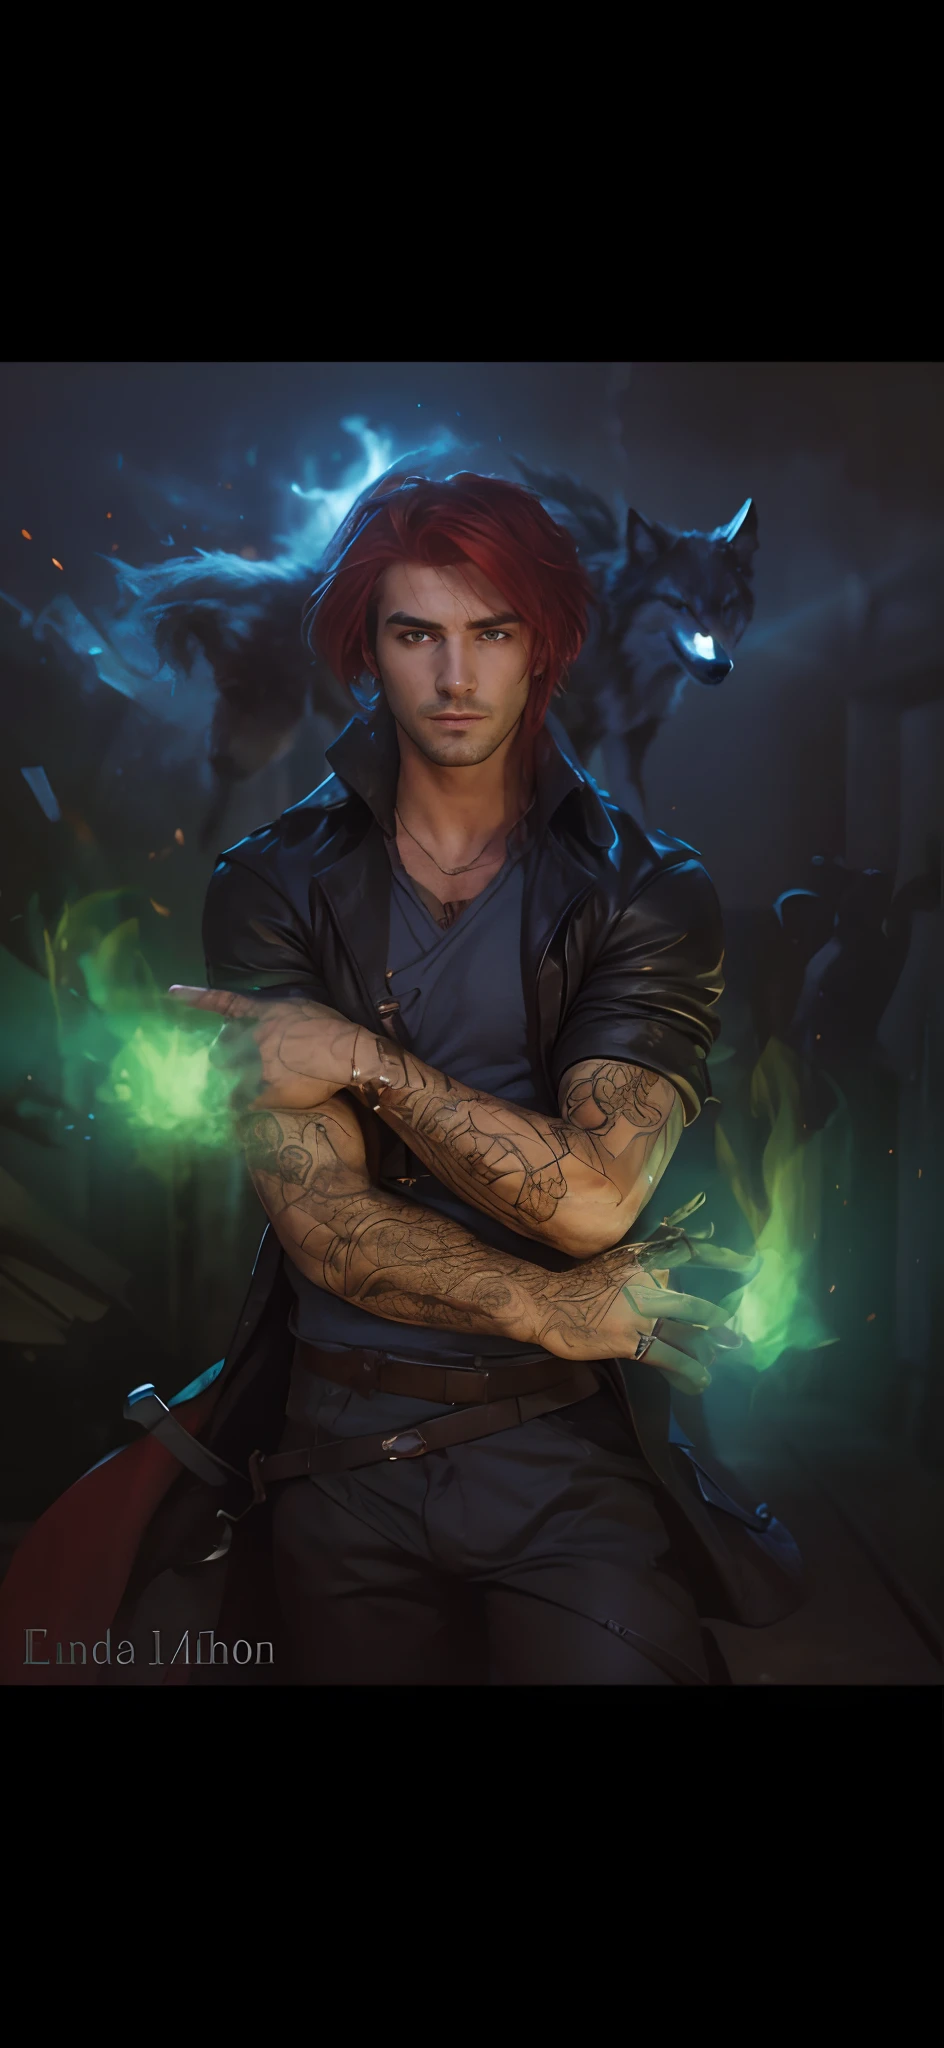 ультра реалистичный, лихой привлекательный мужчина с ярко-рыжими волосами, воплощает образ Константина, Теневое существо, находящееся позади него в форме волка